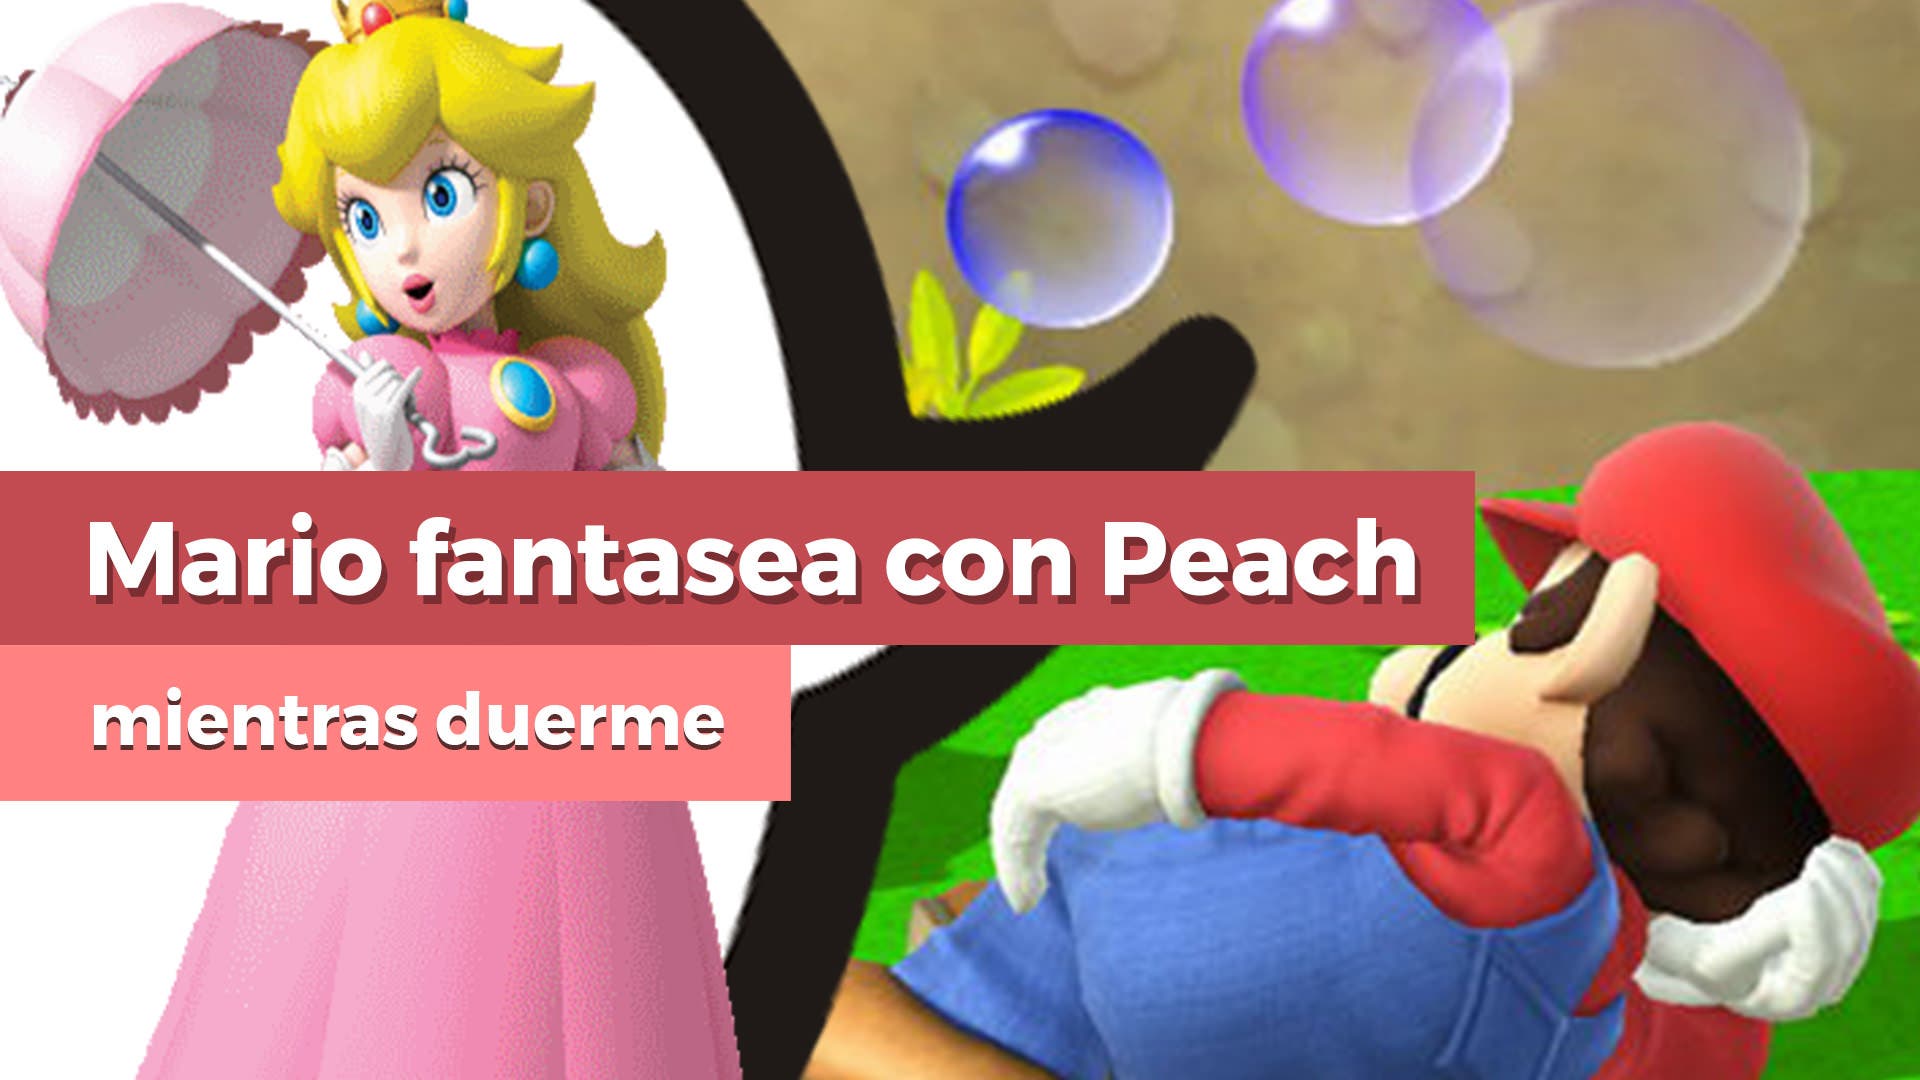 [Vídeo] Mario fantasea con Peach mientras duerme en Super Mario Odyssey